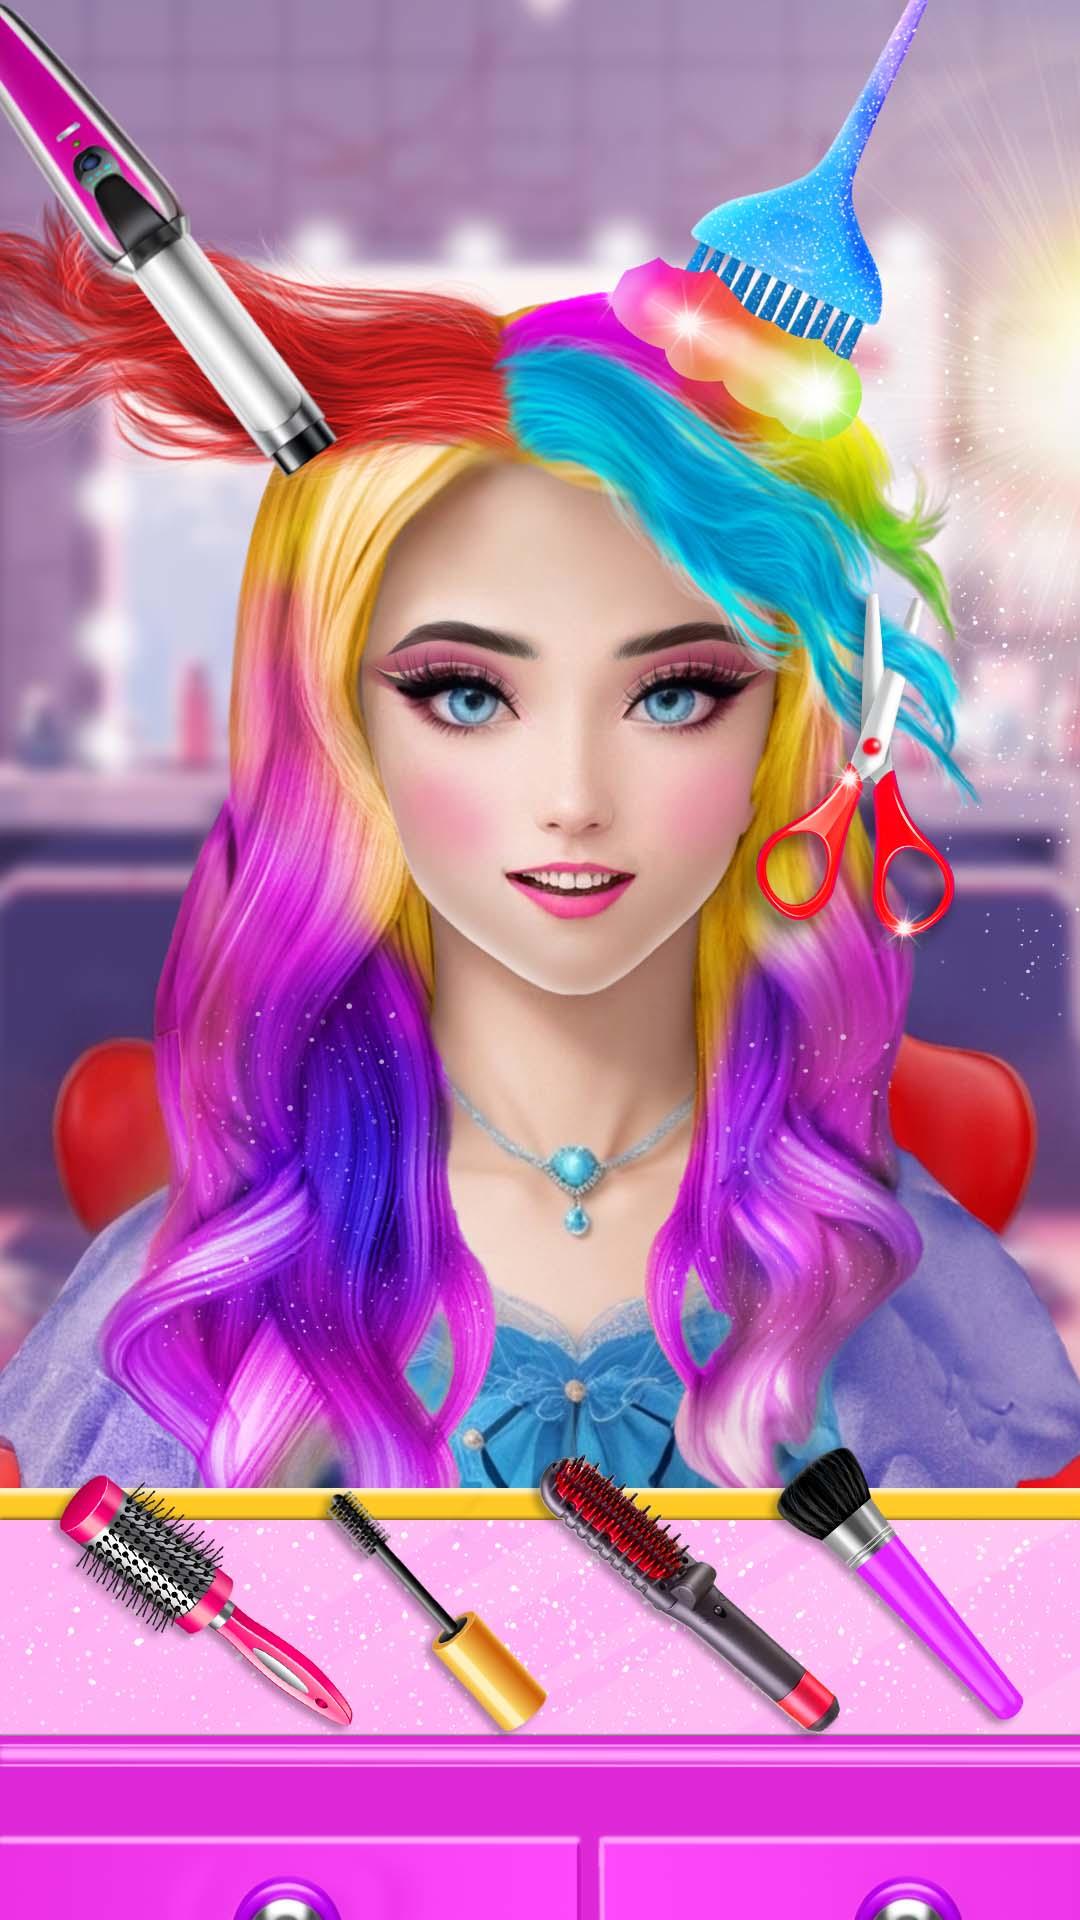 Download do APK de Jogos de meninas de maquiagem para Android